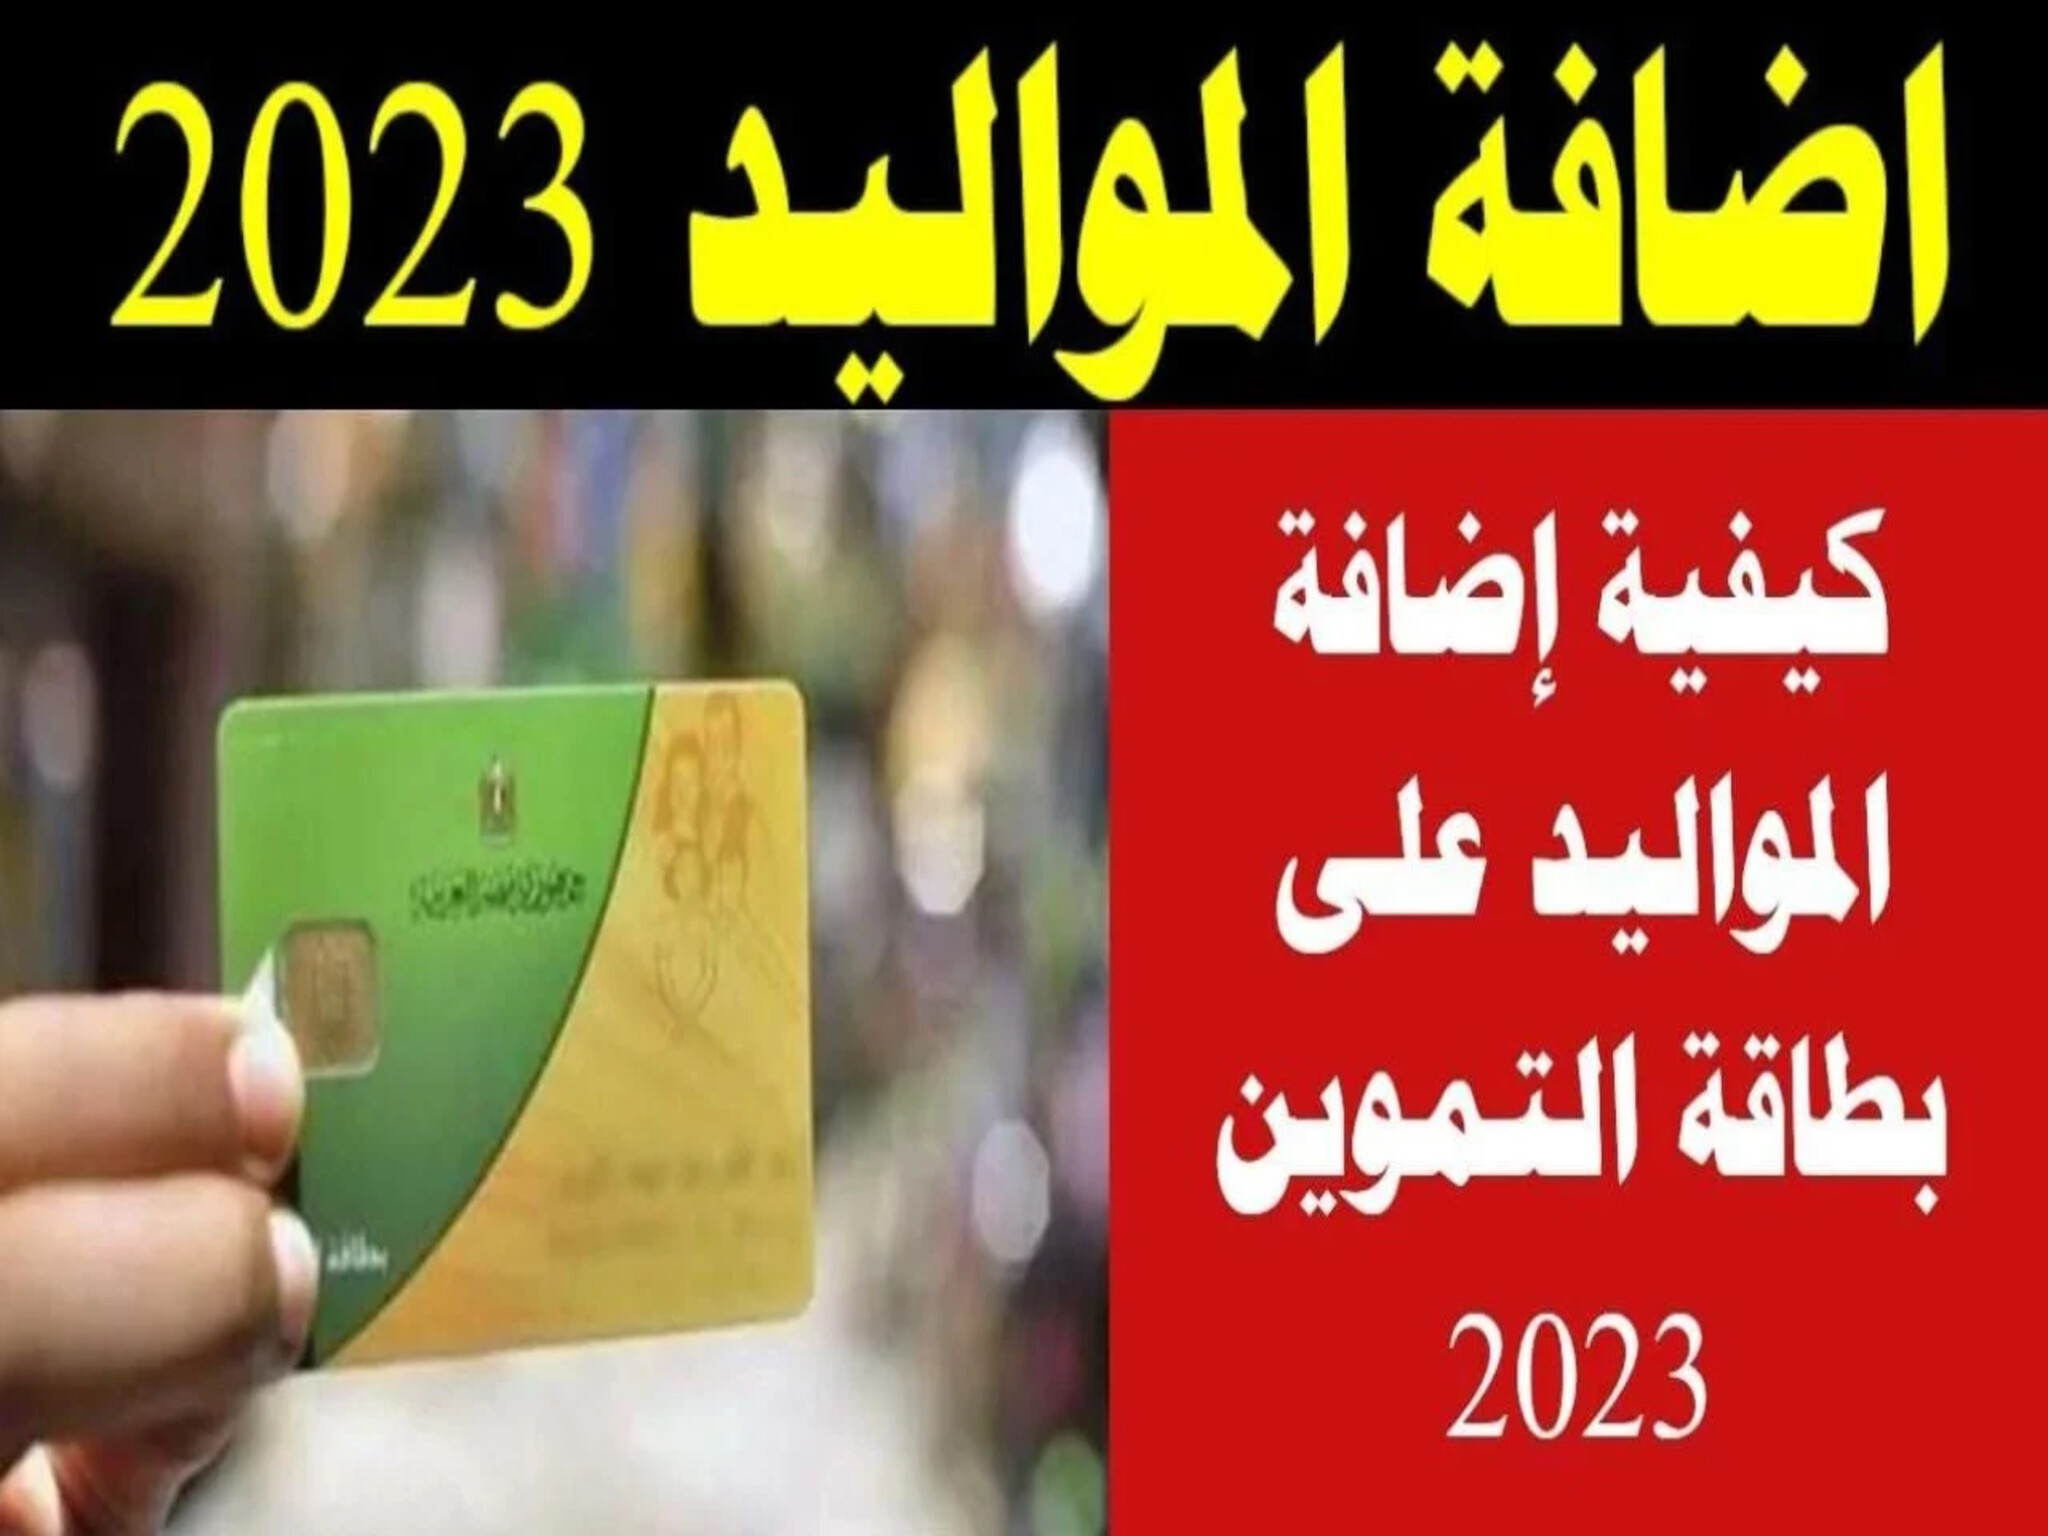 طريقة إضافة المواليد على بطاقة التموين 2023 عبر بوابة مصر الرقمية